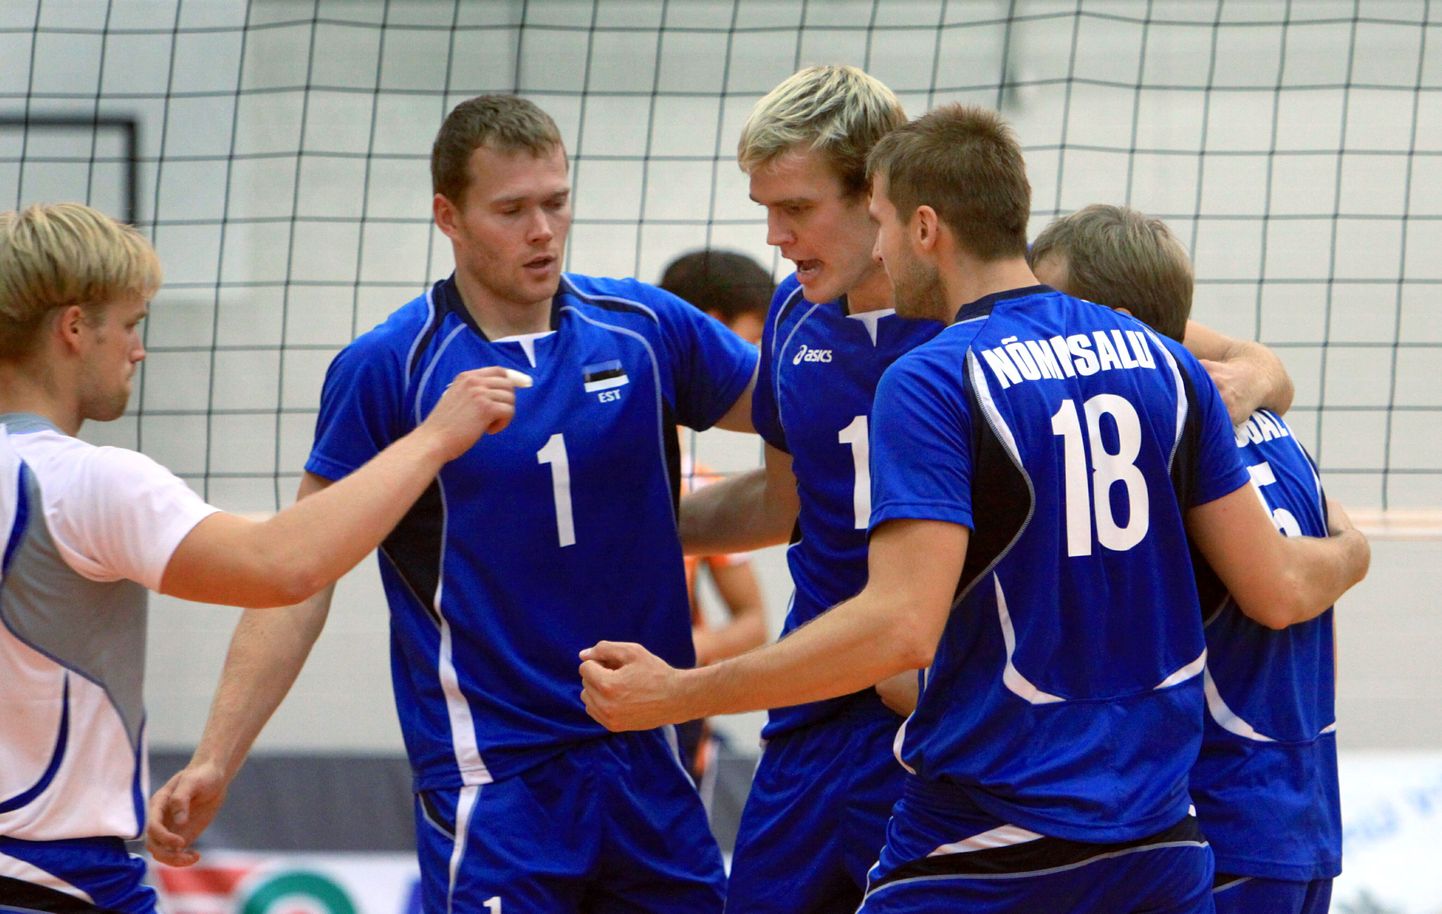 Eesti võrkpallikoondis alistas Pärnu spordihallis Euroopa meistrivõistluste kvalifikatsiooniturniiri kolmanda ringi esimeses mängus Hollandi meeskonna.